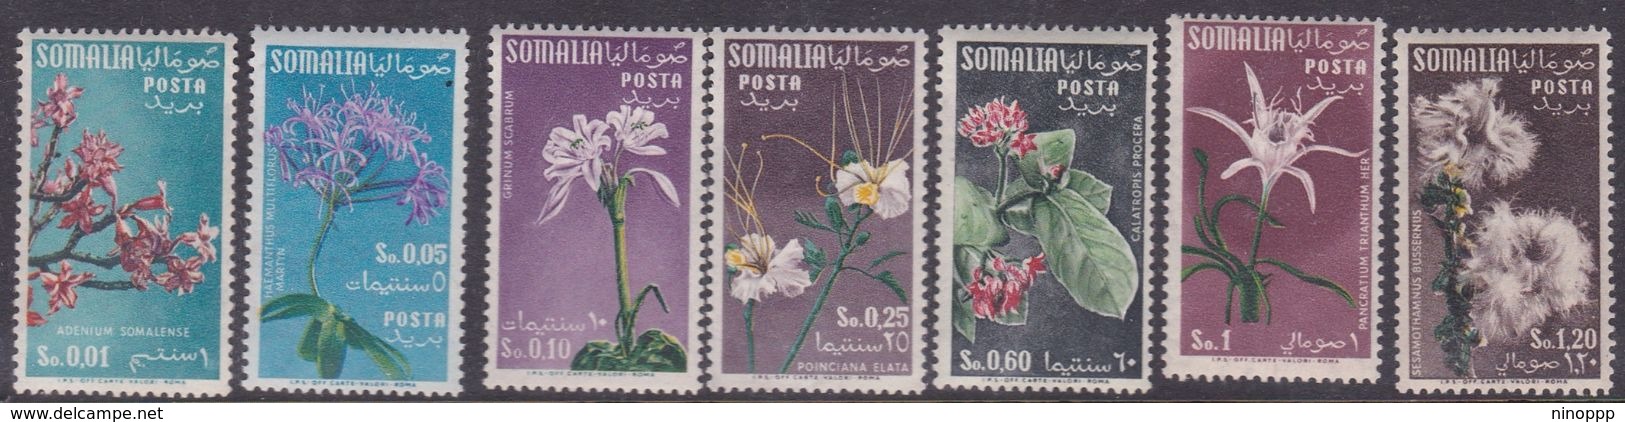 Somalia Scott 199-204 1955 Flower, Mint Never Hinged - Somalie (AFIS)